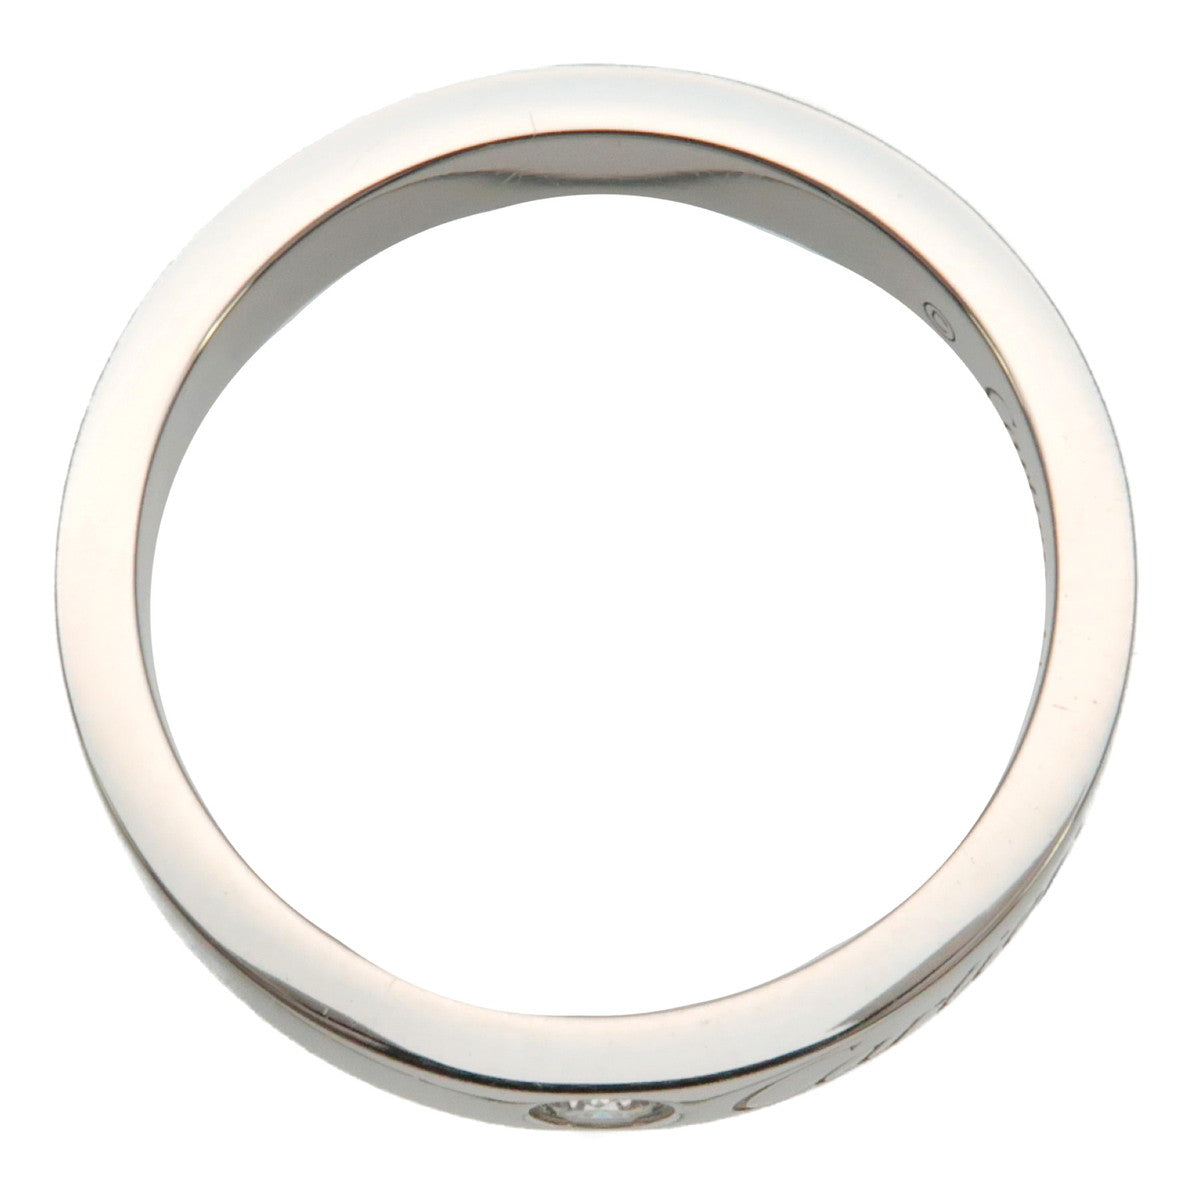 Autentic Cartier Engraved 1P Diamond Ring Platinum #48 US4.5 HK9.5 EU48